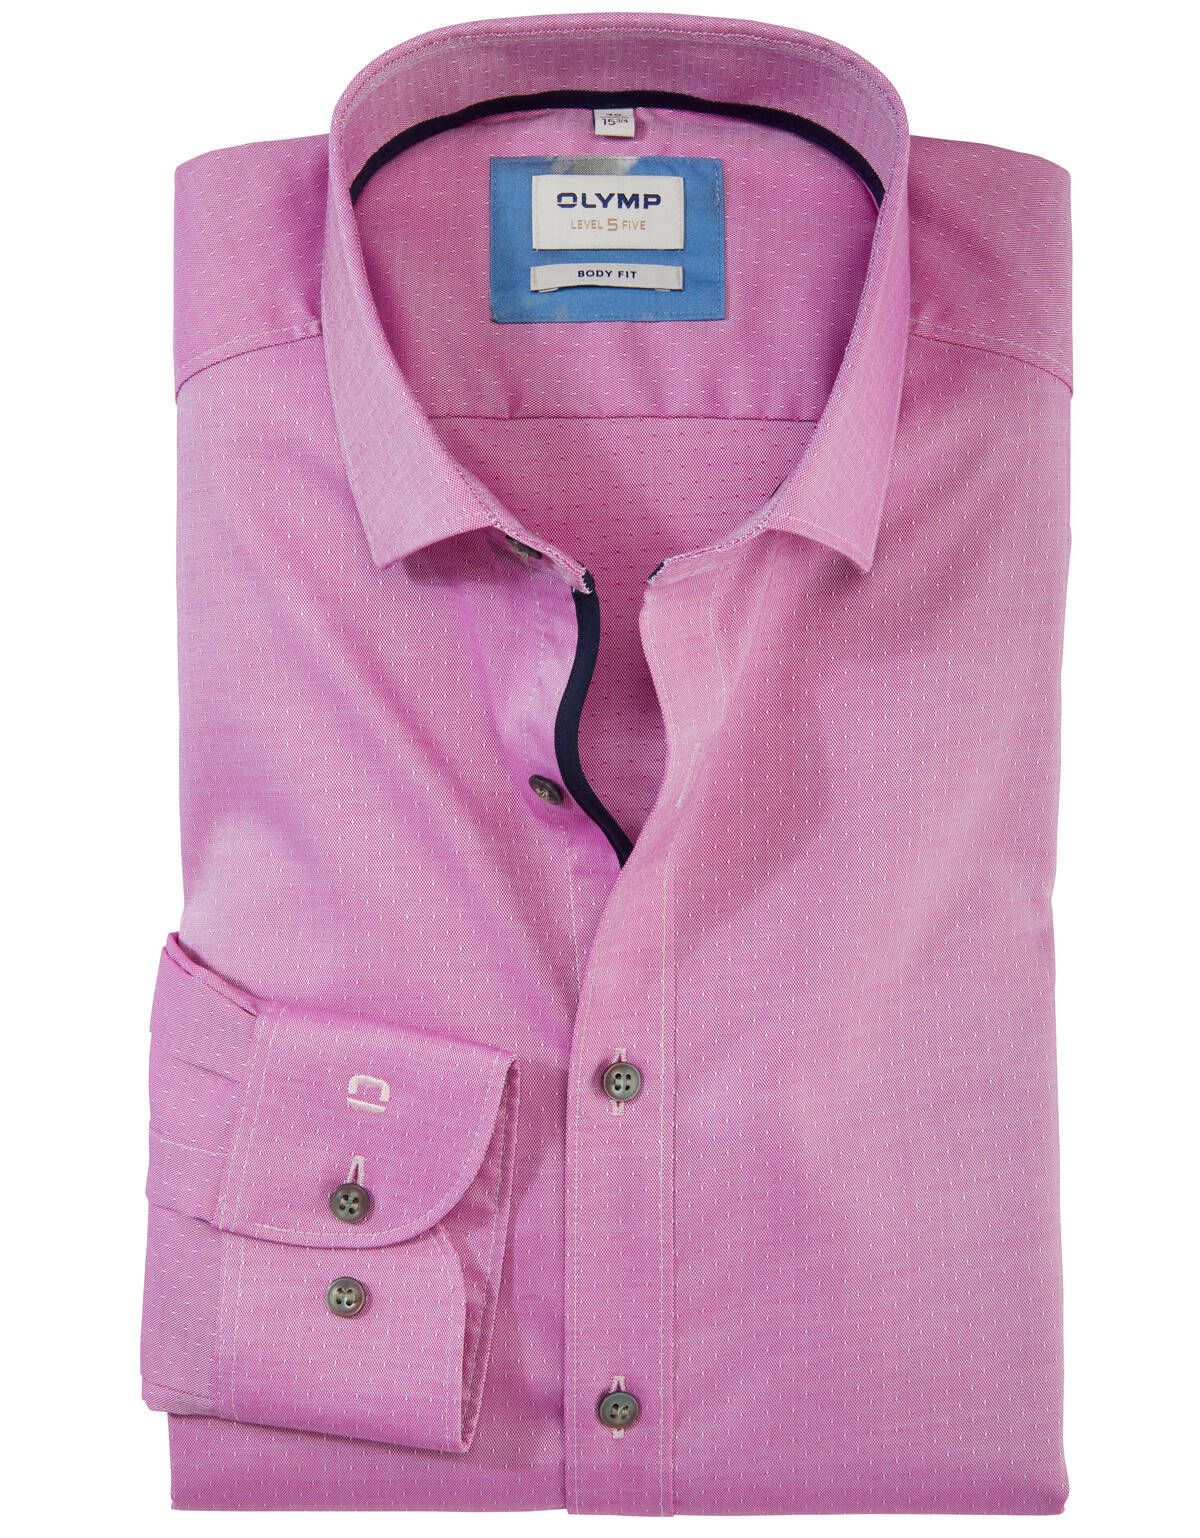 Рубашка классическая мужская OLYMP, body fit[Розовый]